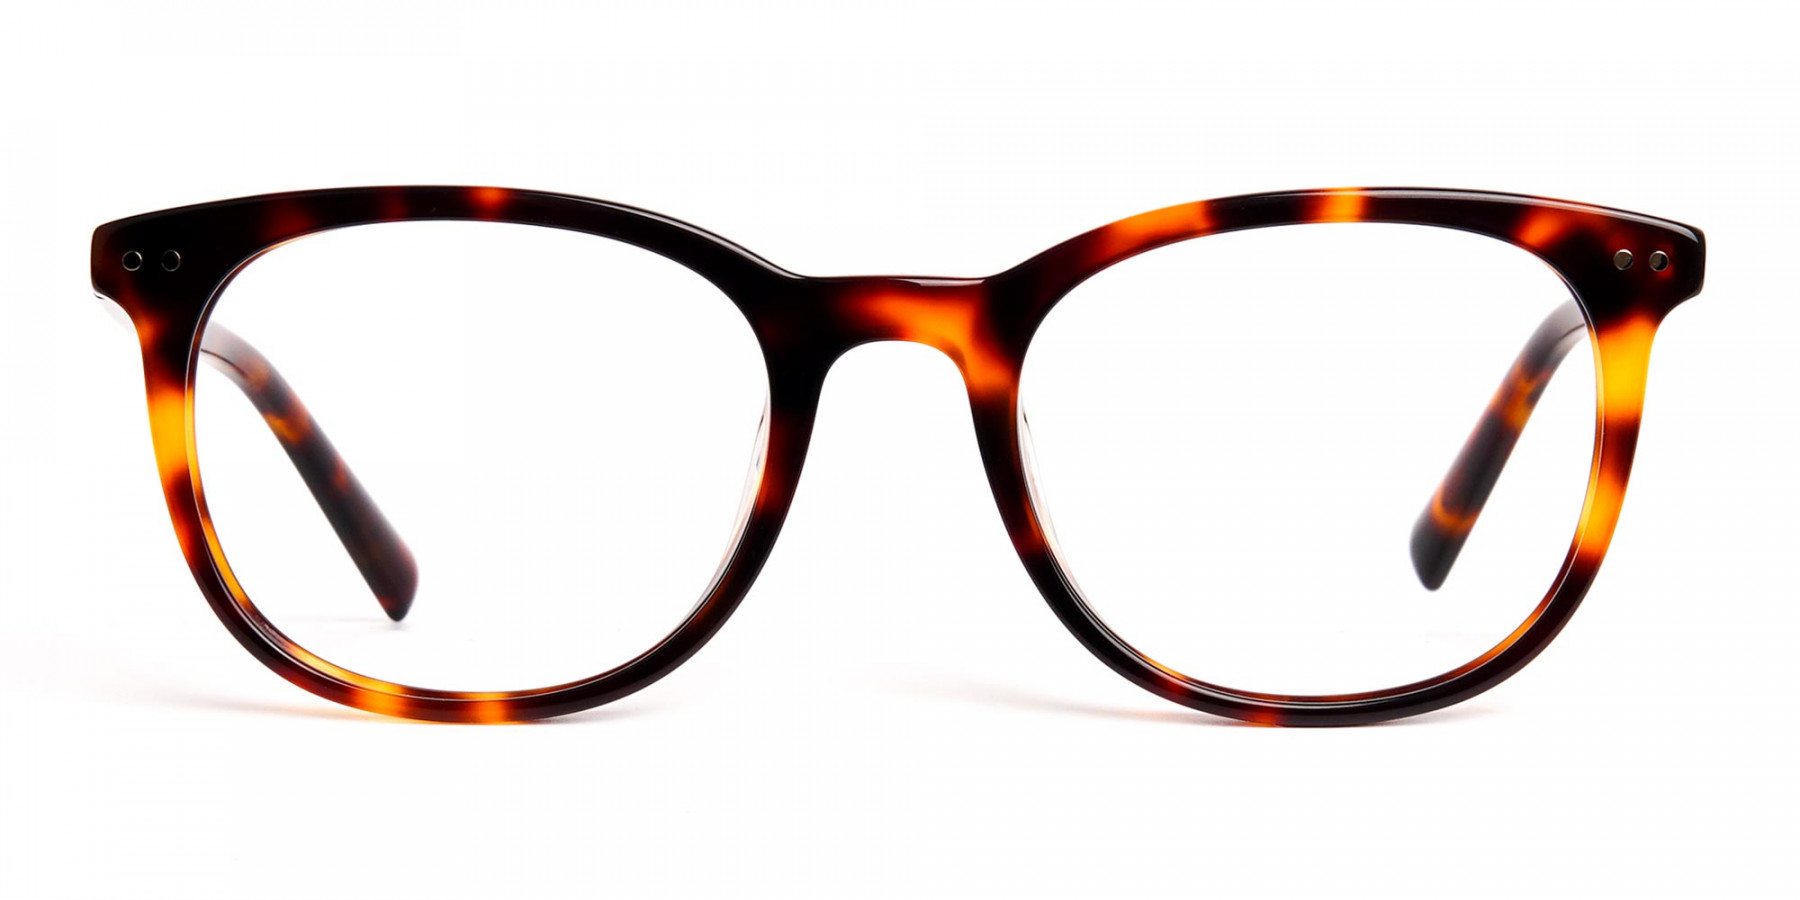 tortoise-shell-wayfarer-round-full-rim-glasses-frames-1